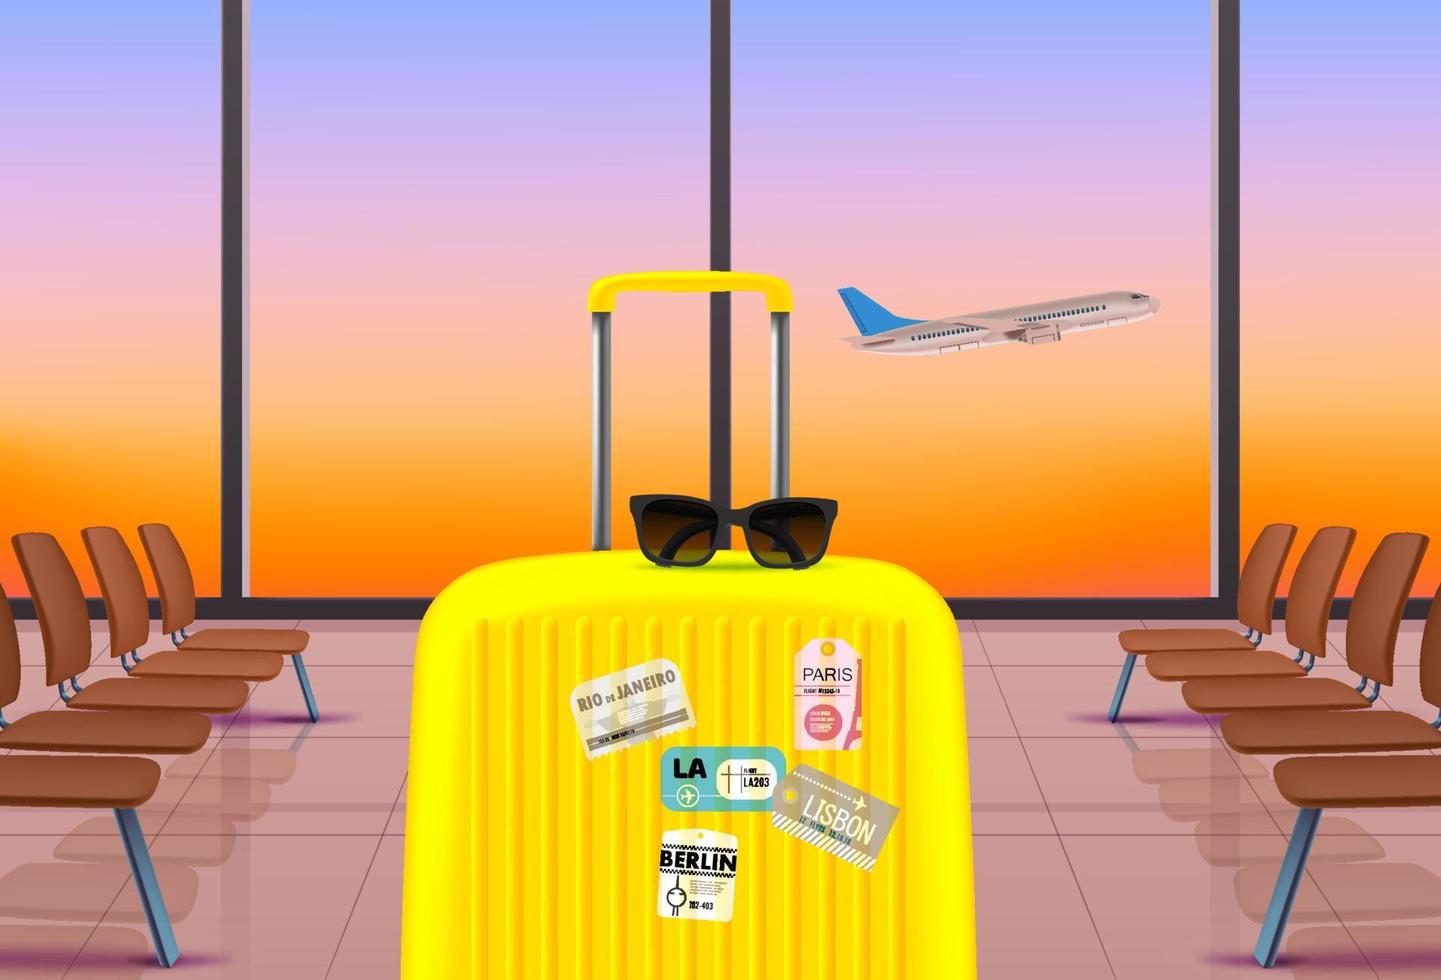 borsa da viaggio con occhiali da sole nella sala d'attesa dell'aeroporto. illustrazione vettoriale 3d